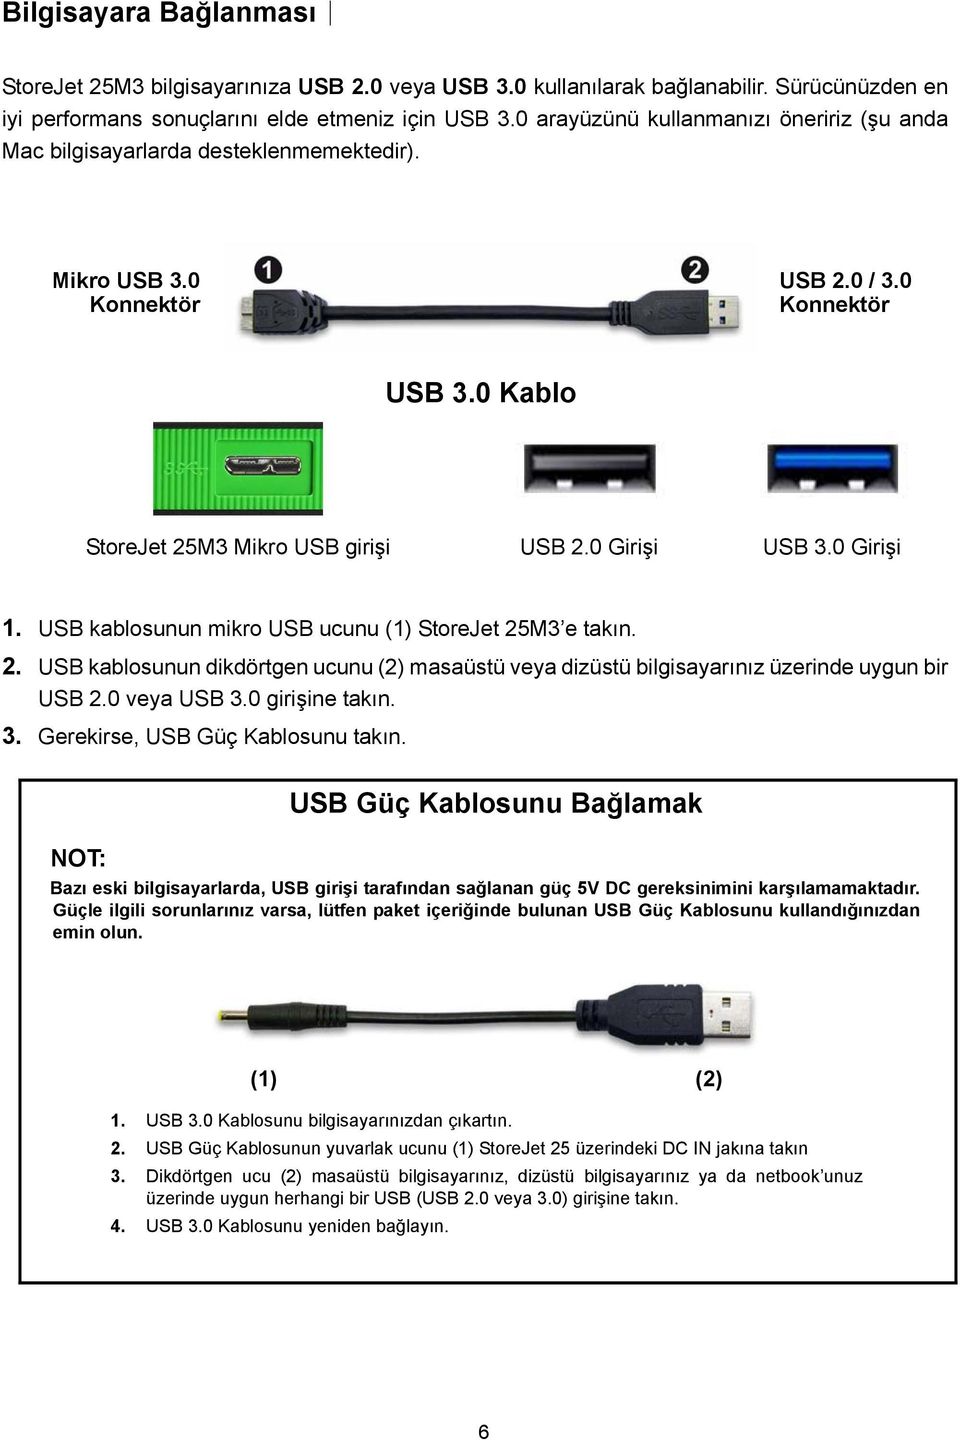 0 Girişi 1. USB kablosunun mikro USB ucunu (1) StoreJet 25M3 e takın. 2. USB kablosunun dikdörtgen ucunu (2) masaüstü veya dizüstü bilgisayarınız üzerinde uygun bir USB 2.0 veya USB 3.